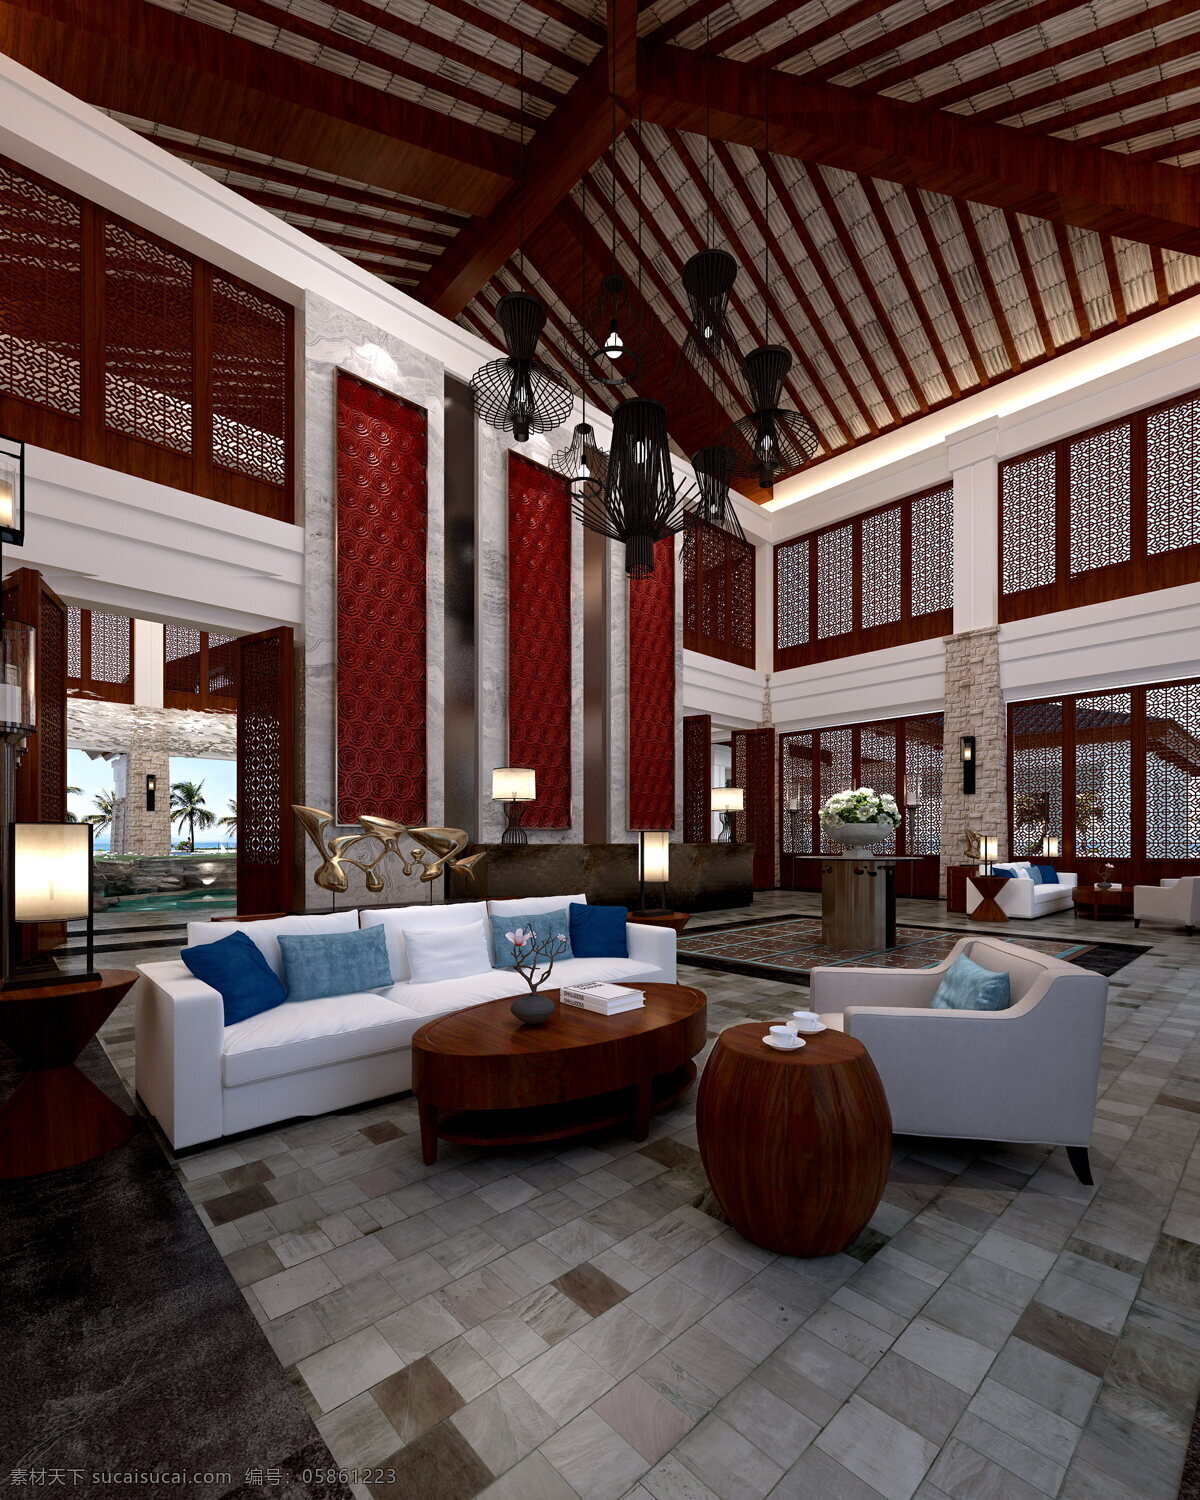 中式 风格 售楼处 木制 茶几 工装 效果图 方格地板 木制茶几 木制圆凳 红色背景墙 蓝色抱枕